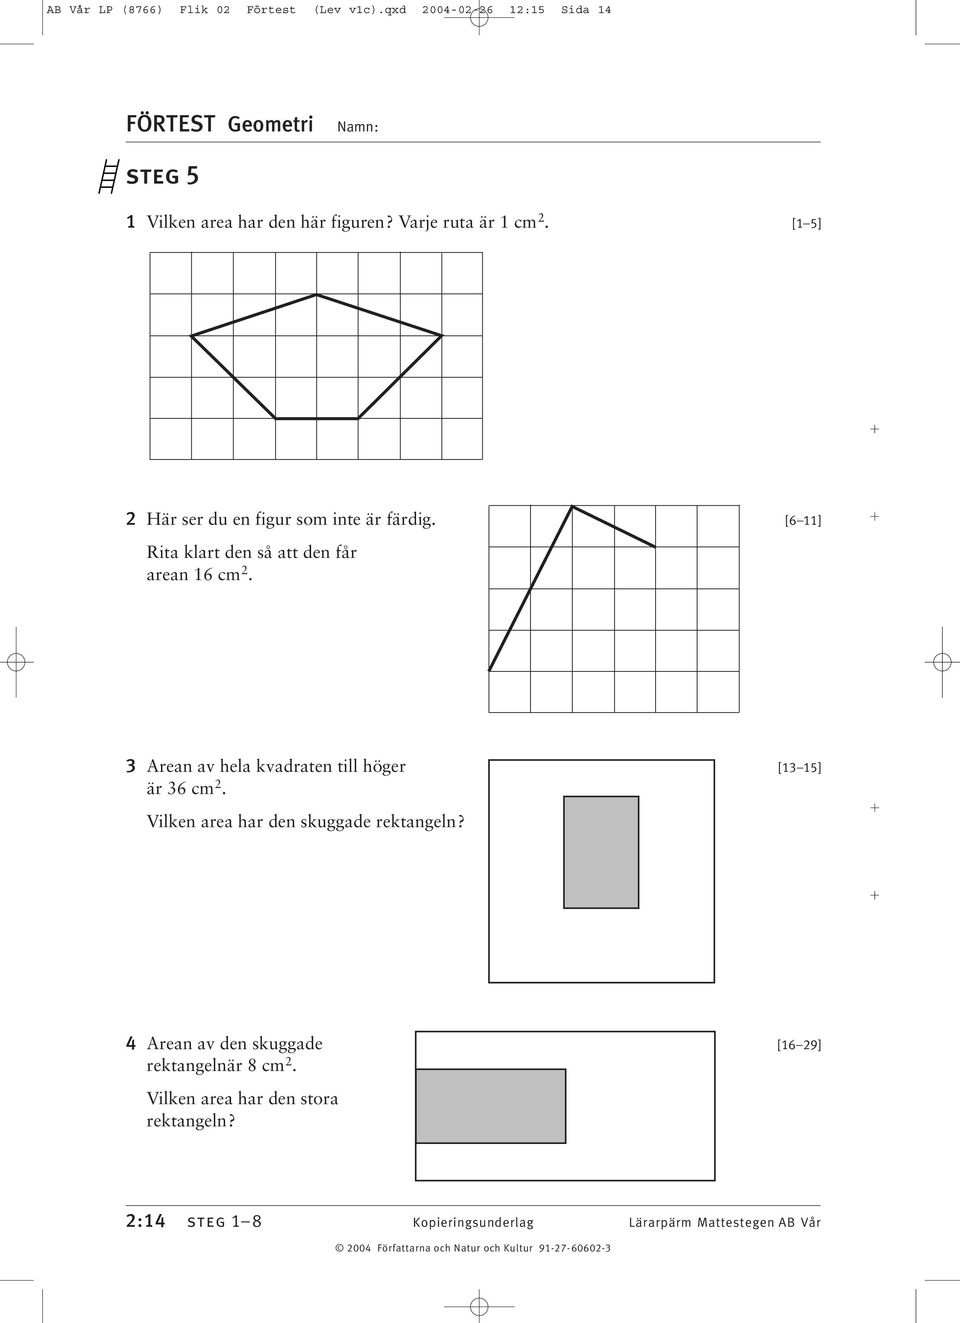 Arean av hela kvadraten till höger [ 5] är 6 cm. Vilken area har den skuggade rektangeln?